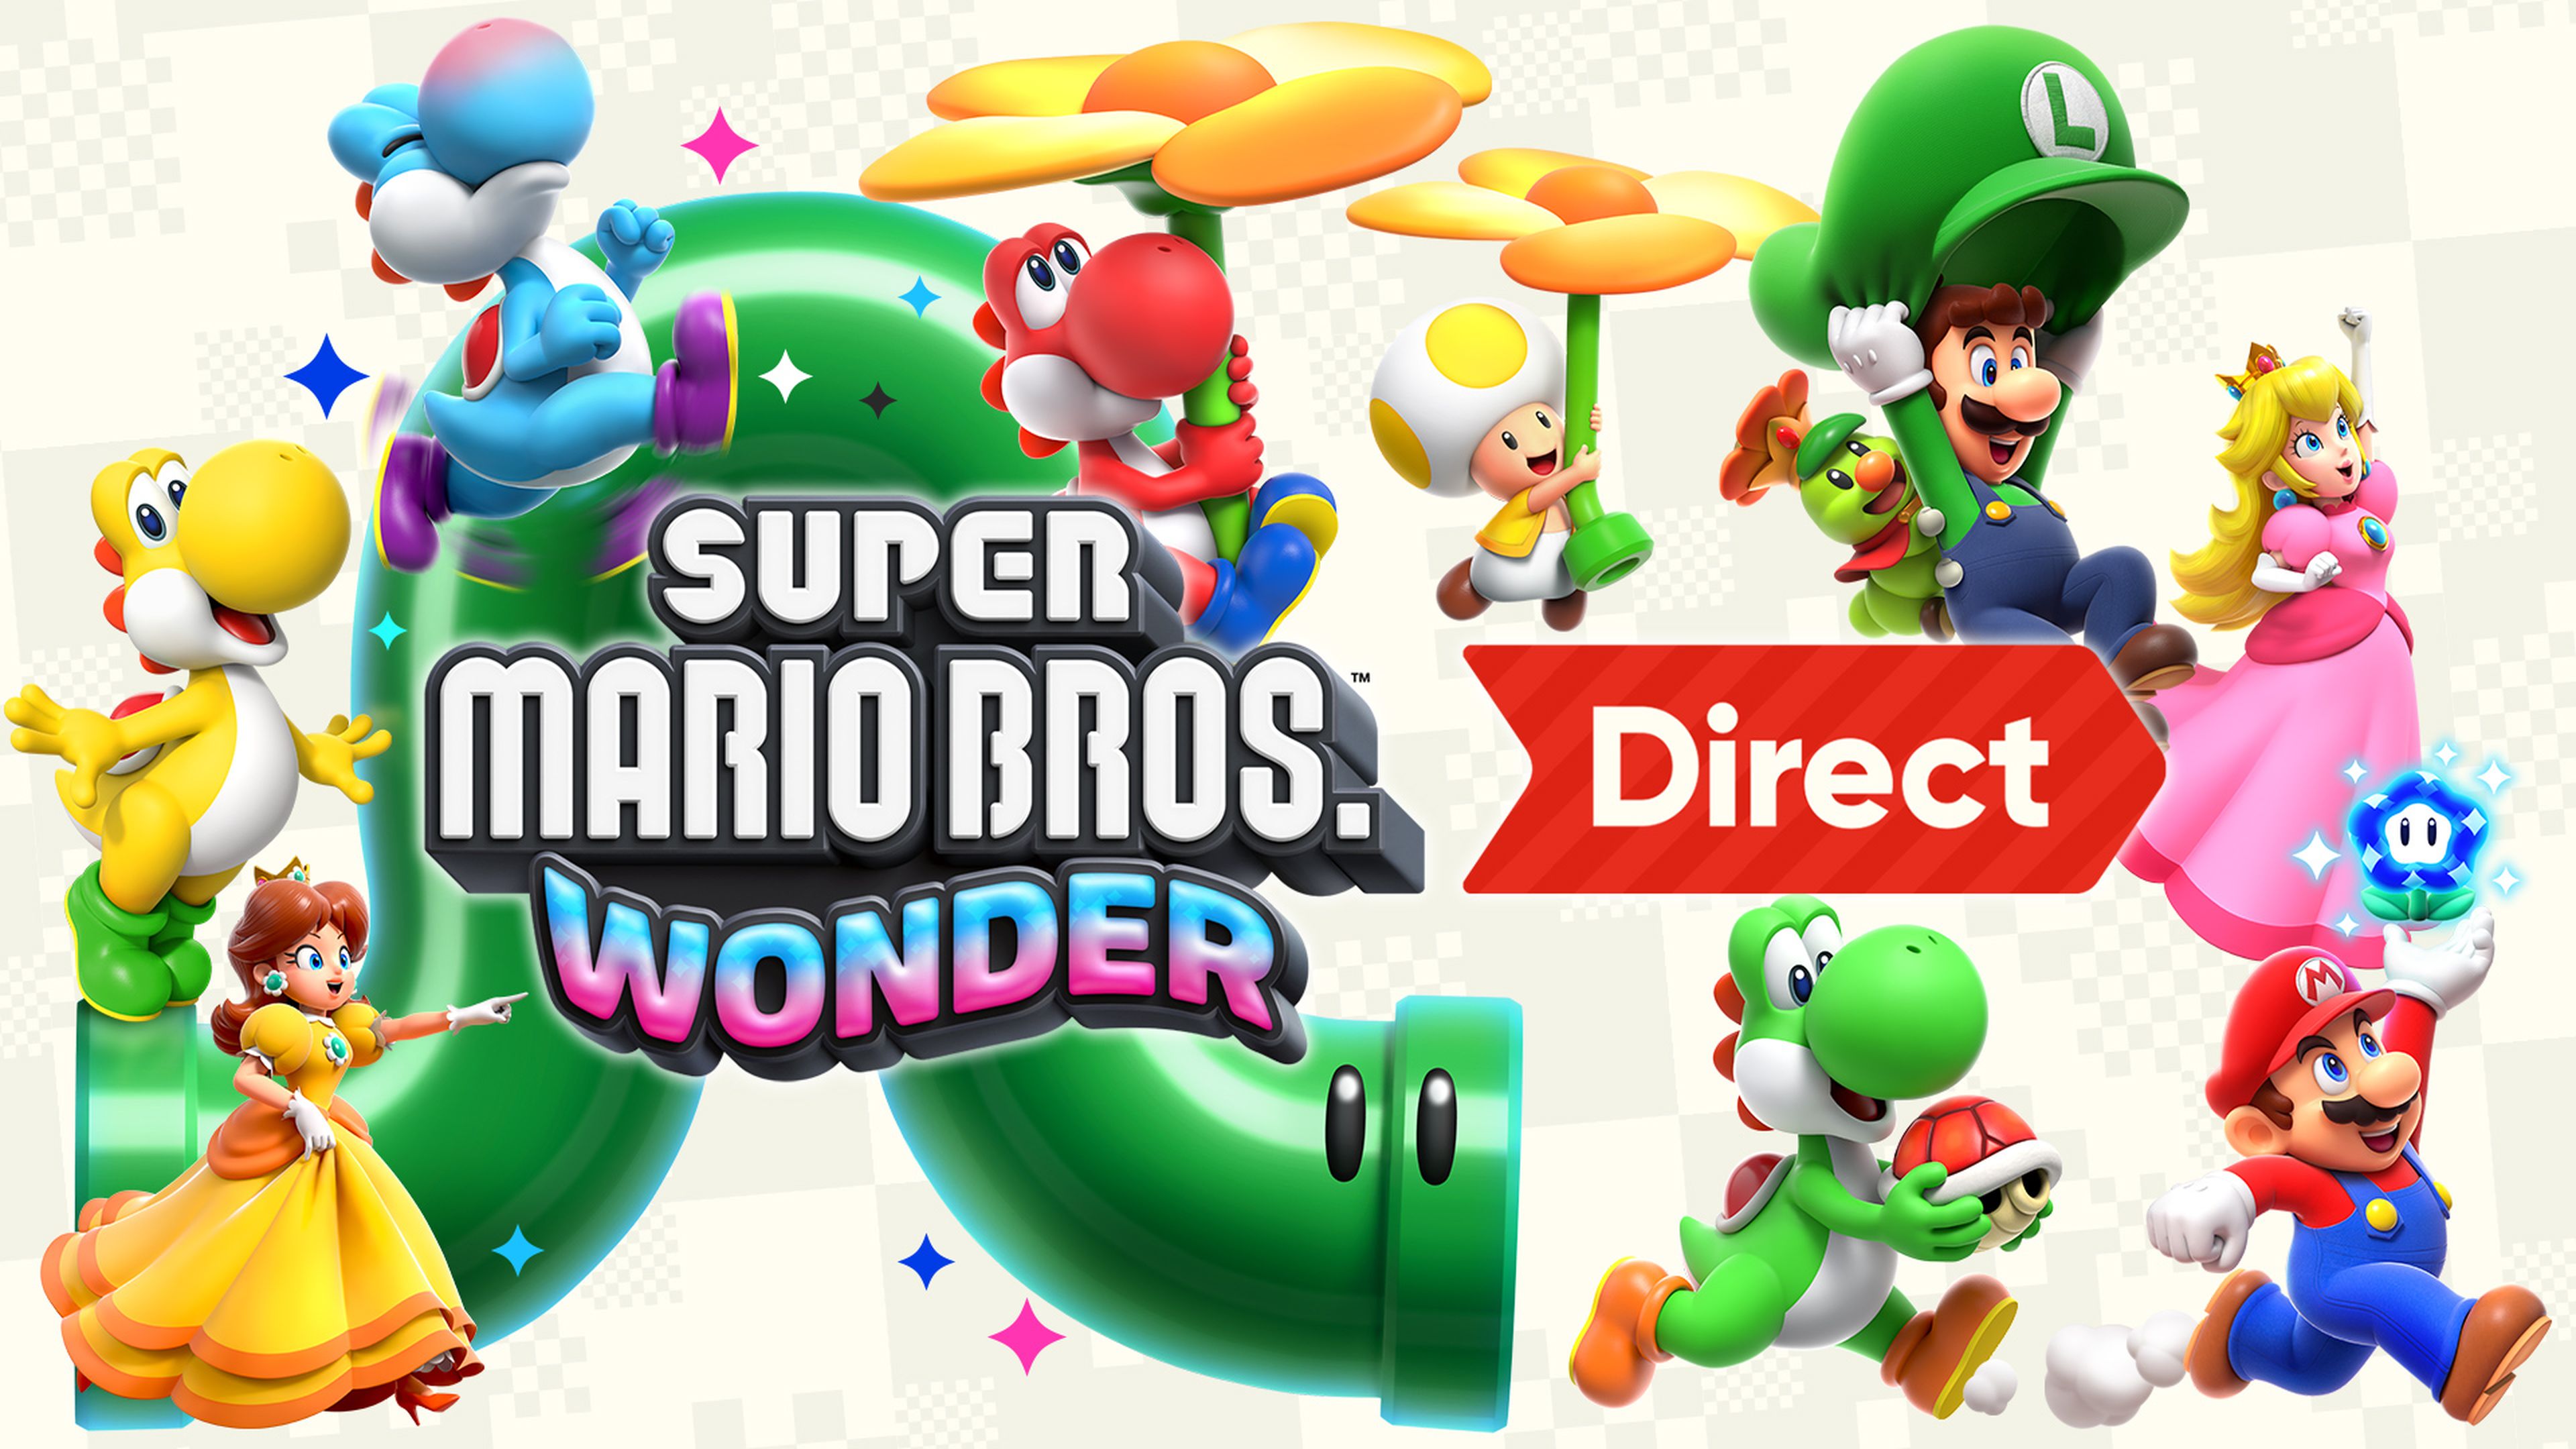 Cómo ver el Nintendo Direct de Super Mario Bros. Wonder horario y